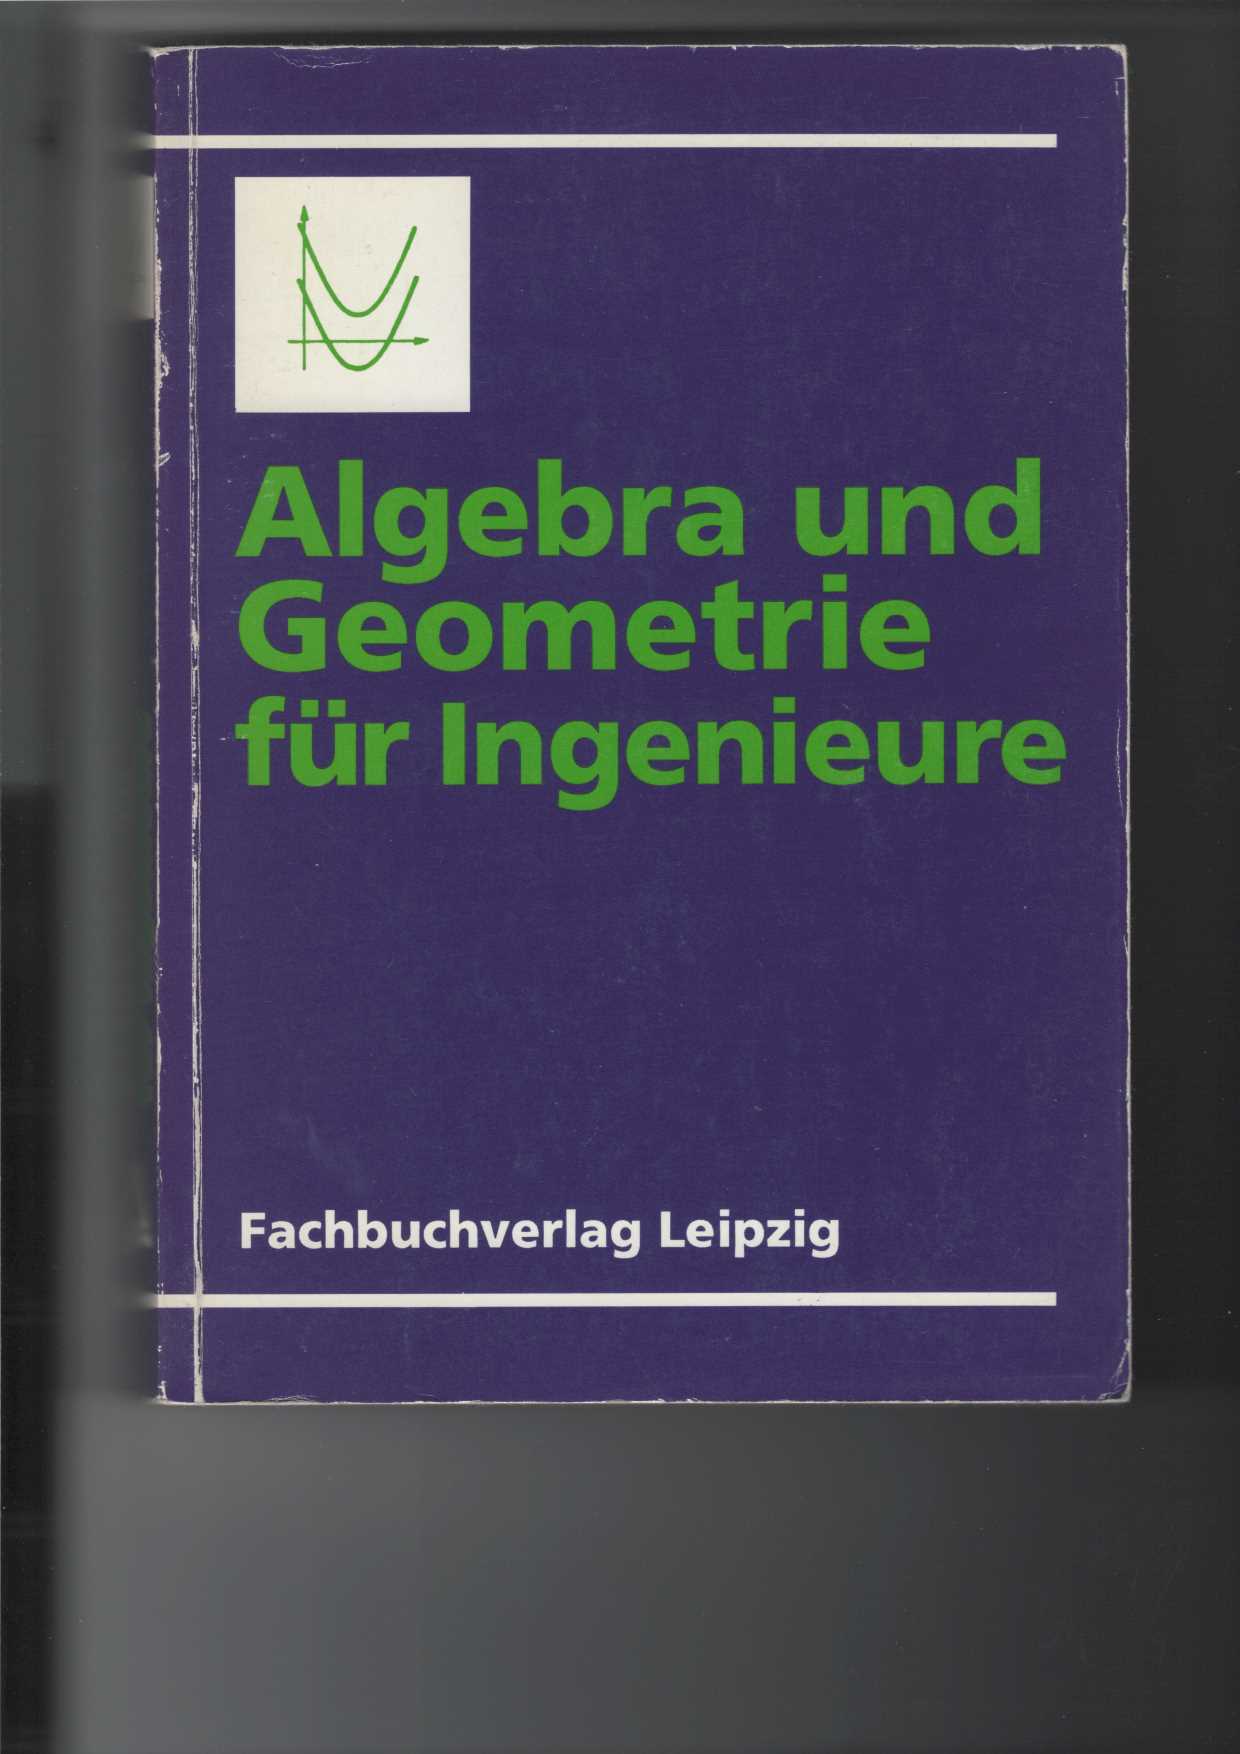 Algebra und Geometrie für Ingenieure.